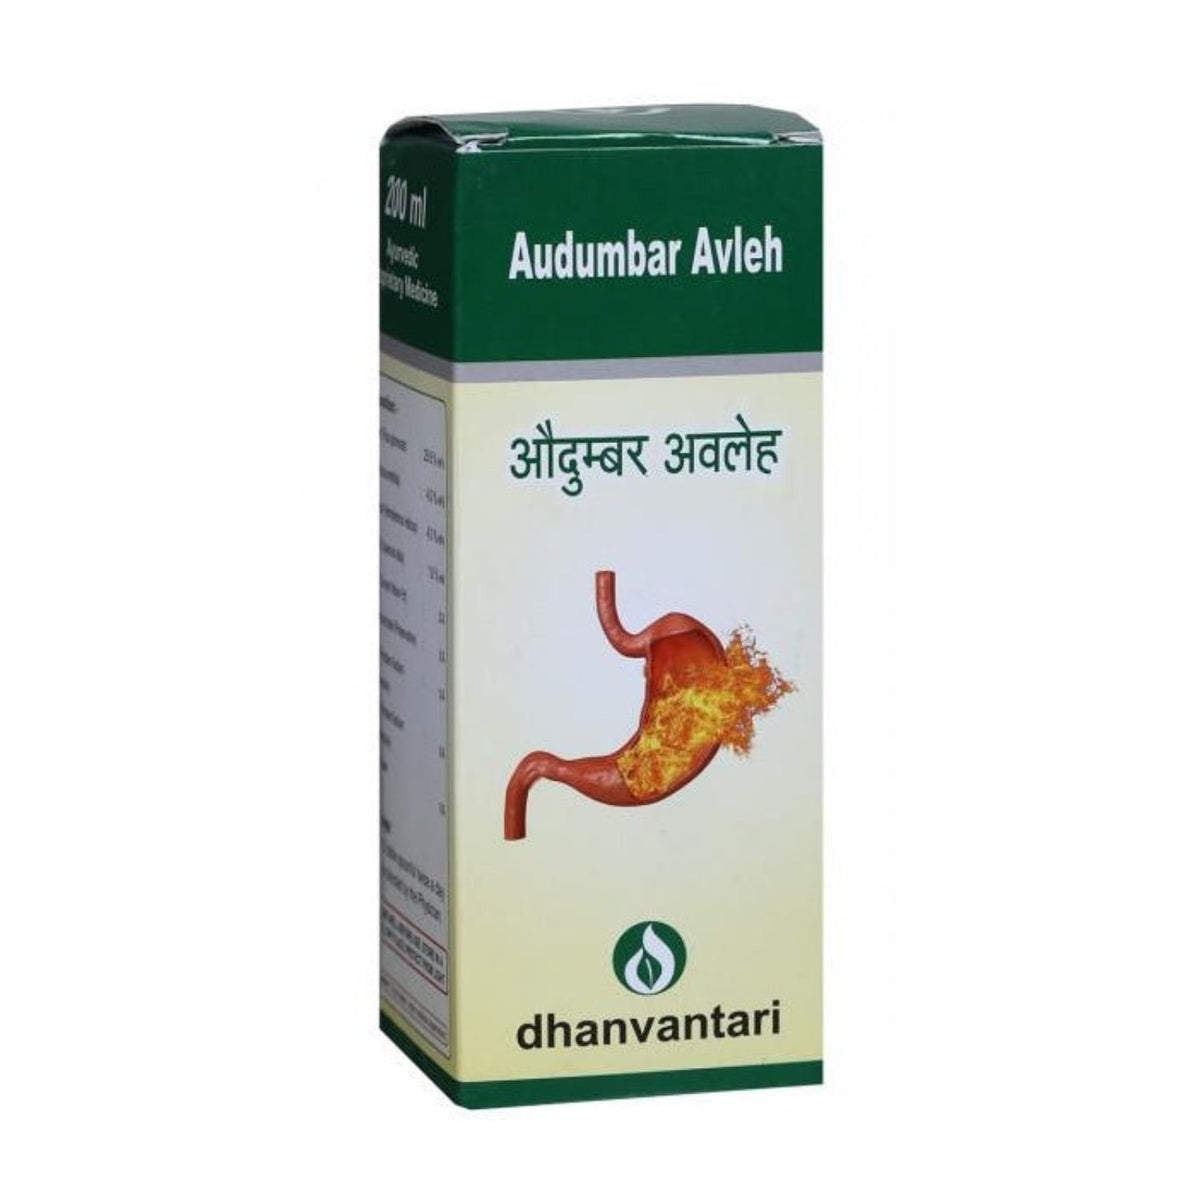 Dhanvantari Ayurvedic Audumbar Useful In Hyper Acidity Avleh